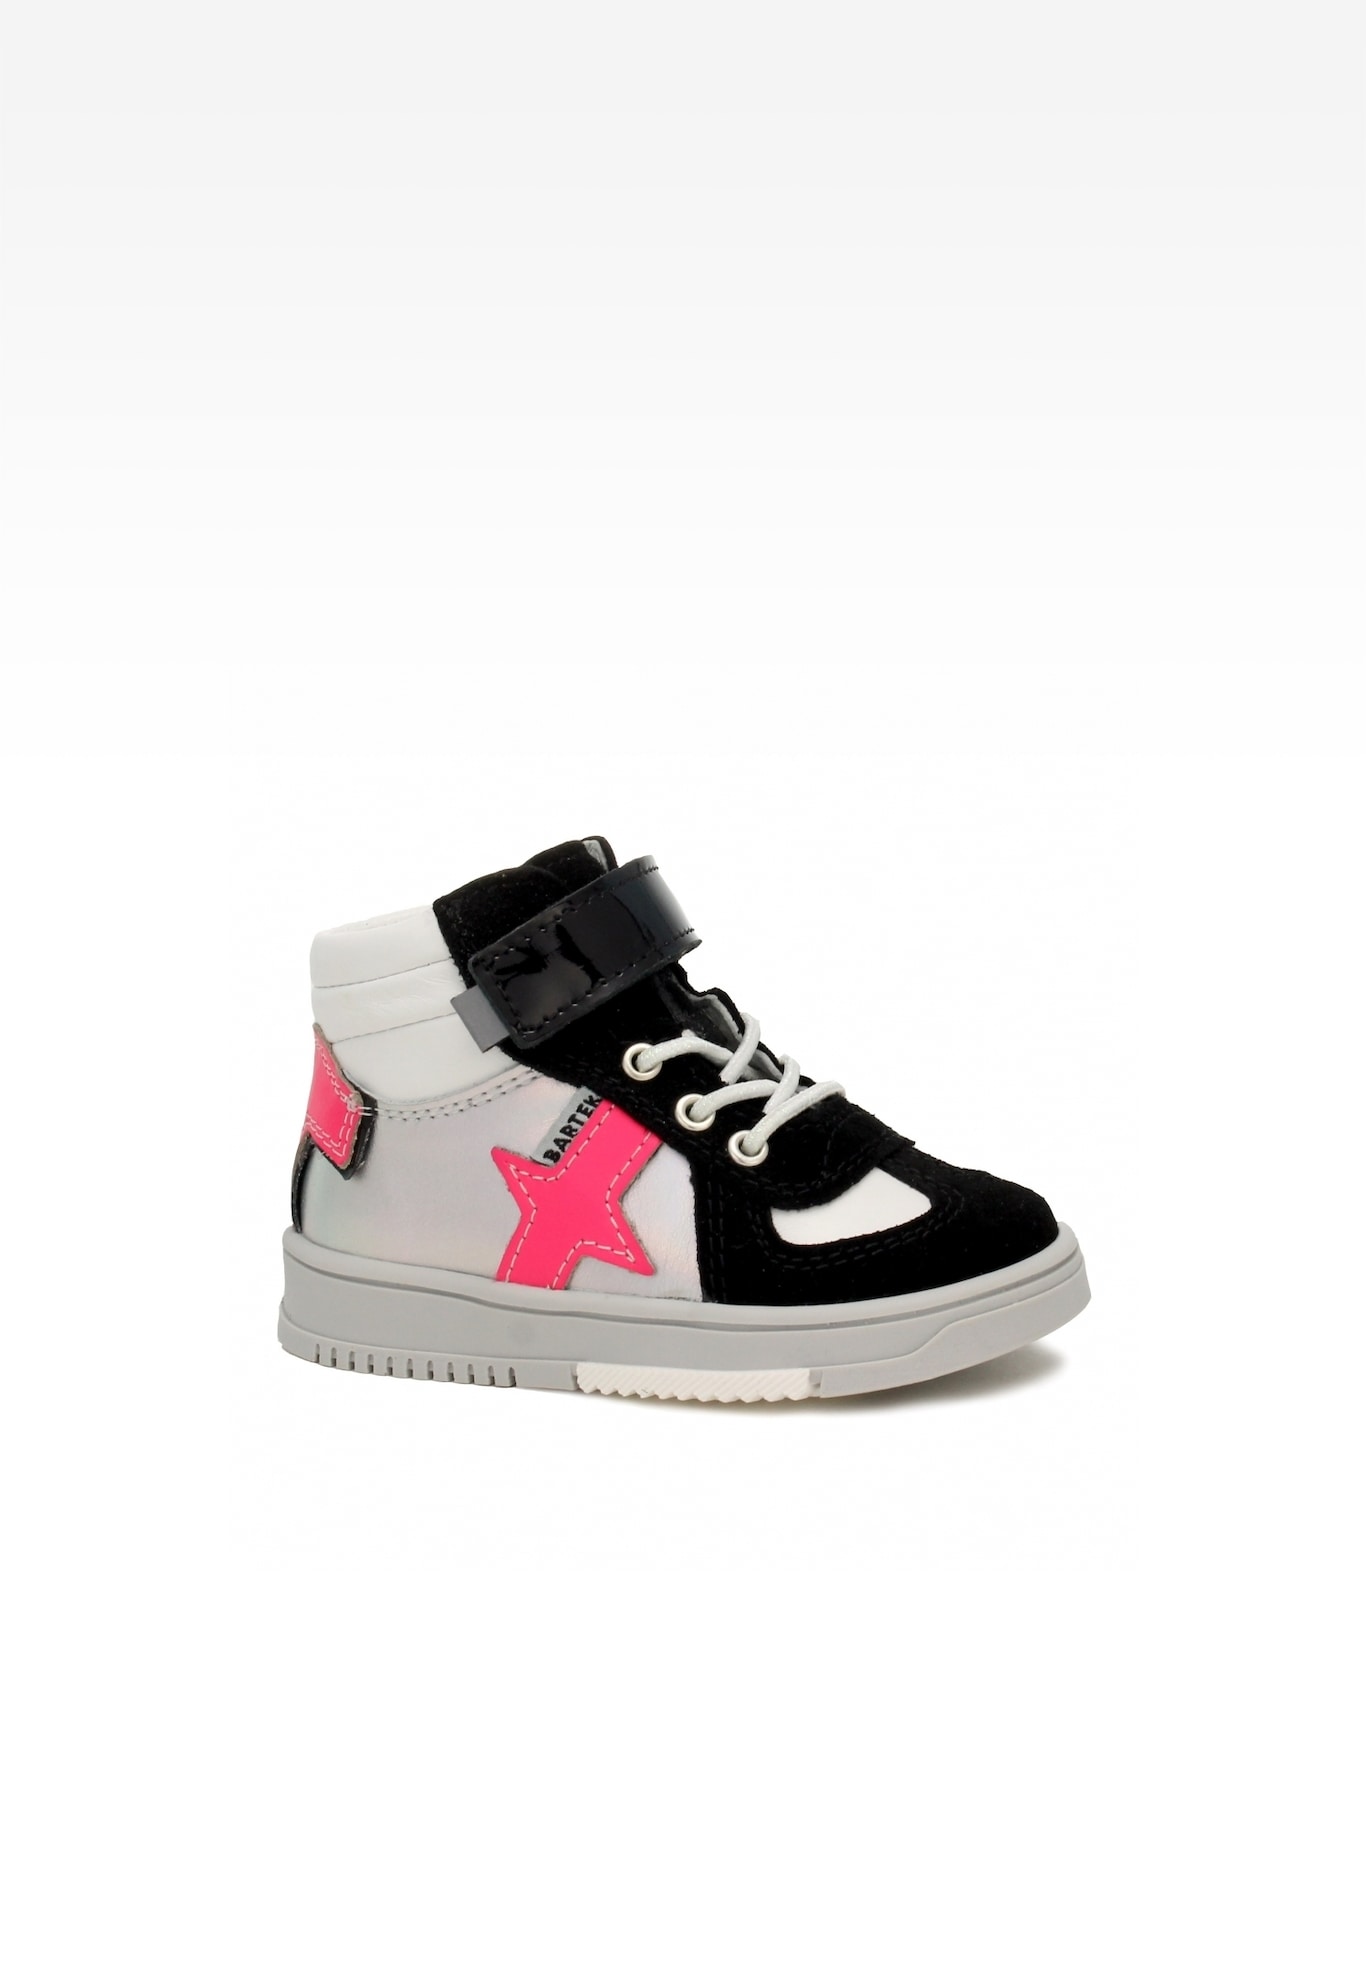 Sneakers BARTEK 11577012 ll, dla dziewcząt, biało-czarny